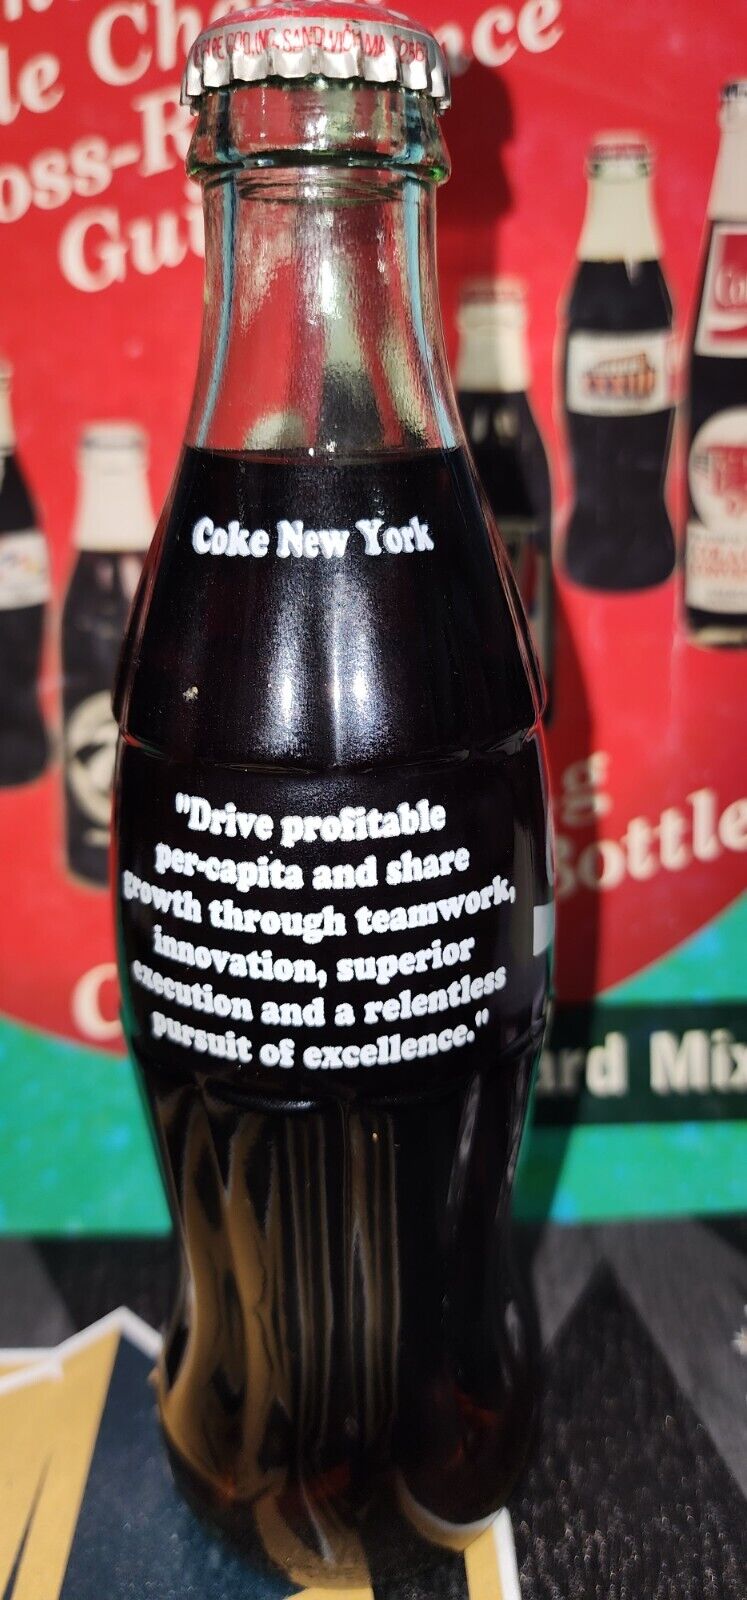 SPECIAL Coca-Cola commemorative bottle 1996 NEW YORK DRIVE PROFITABLE PERCAPITA 